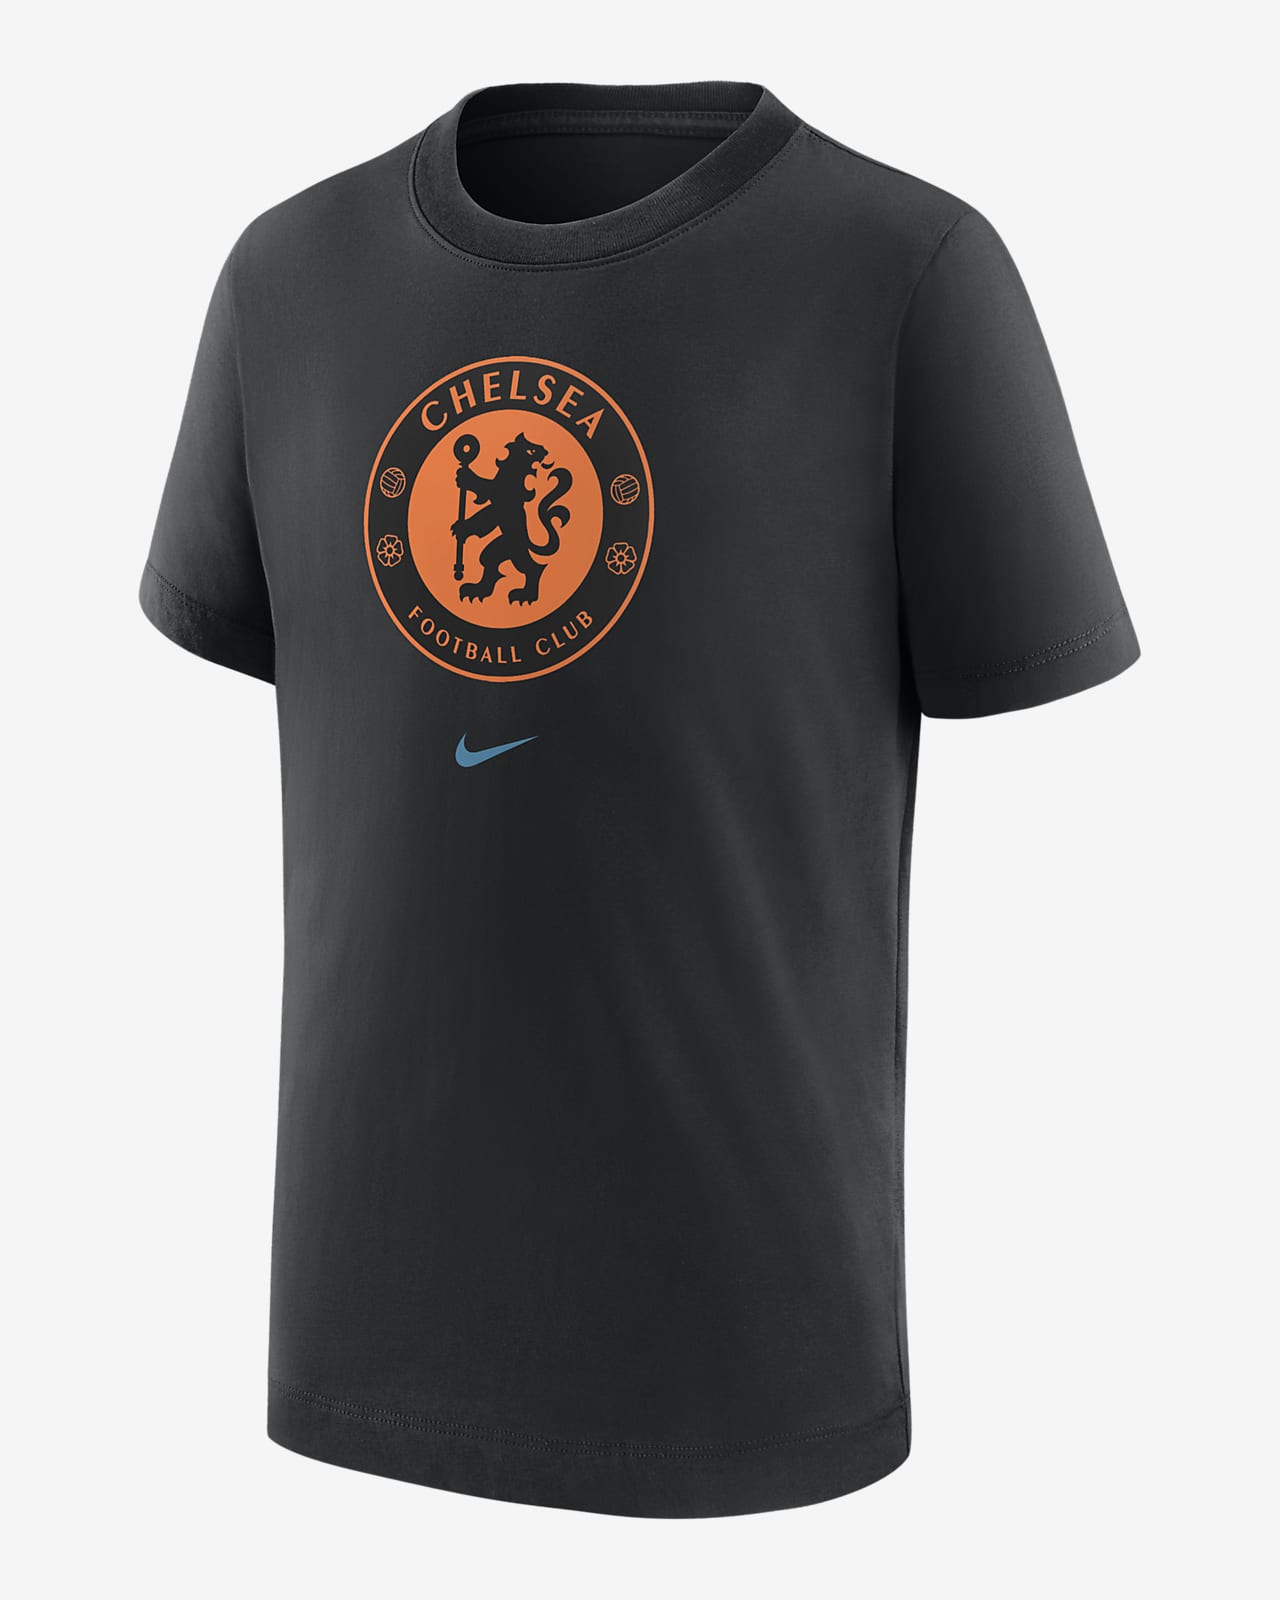 Chelsea FC Big Kids' T-Shirt